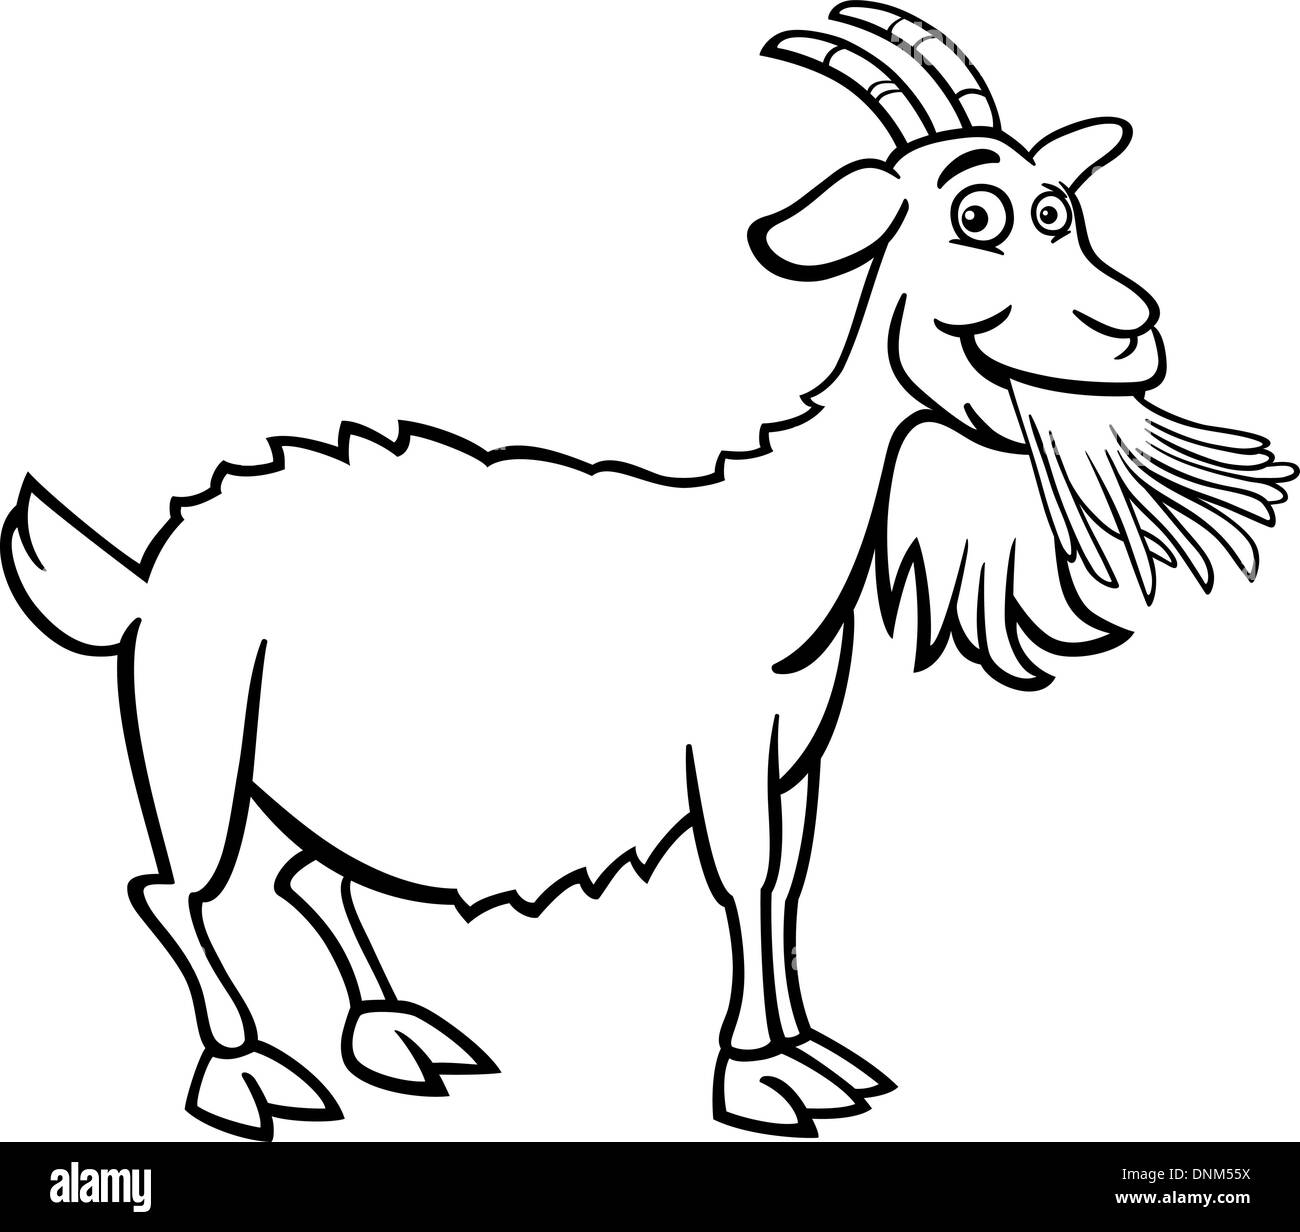 Cartoon noir et blanc Illustration de Funny Farm Animal Chèvre pour Coloring Book Illustration de Vecteur